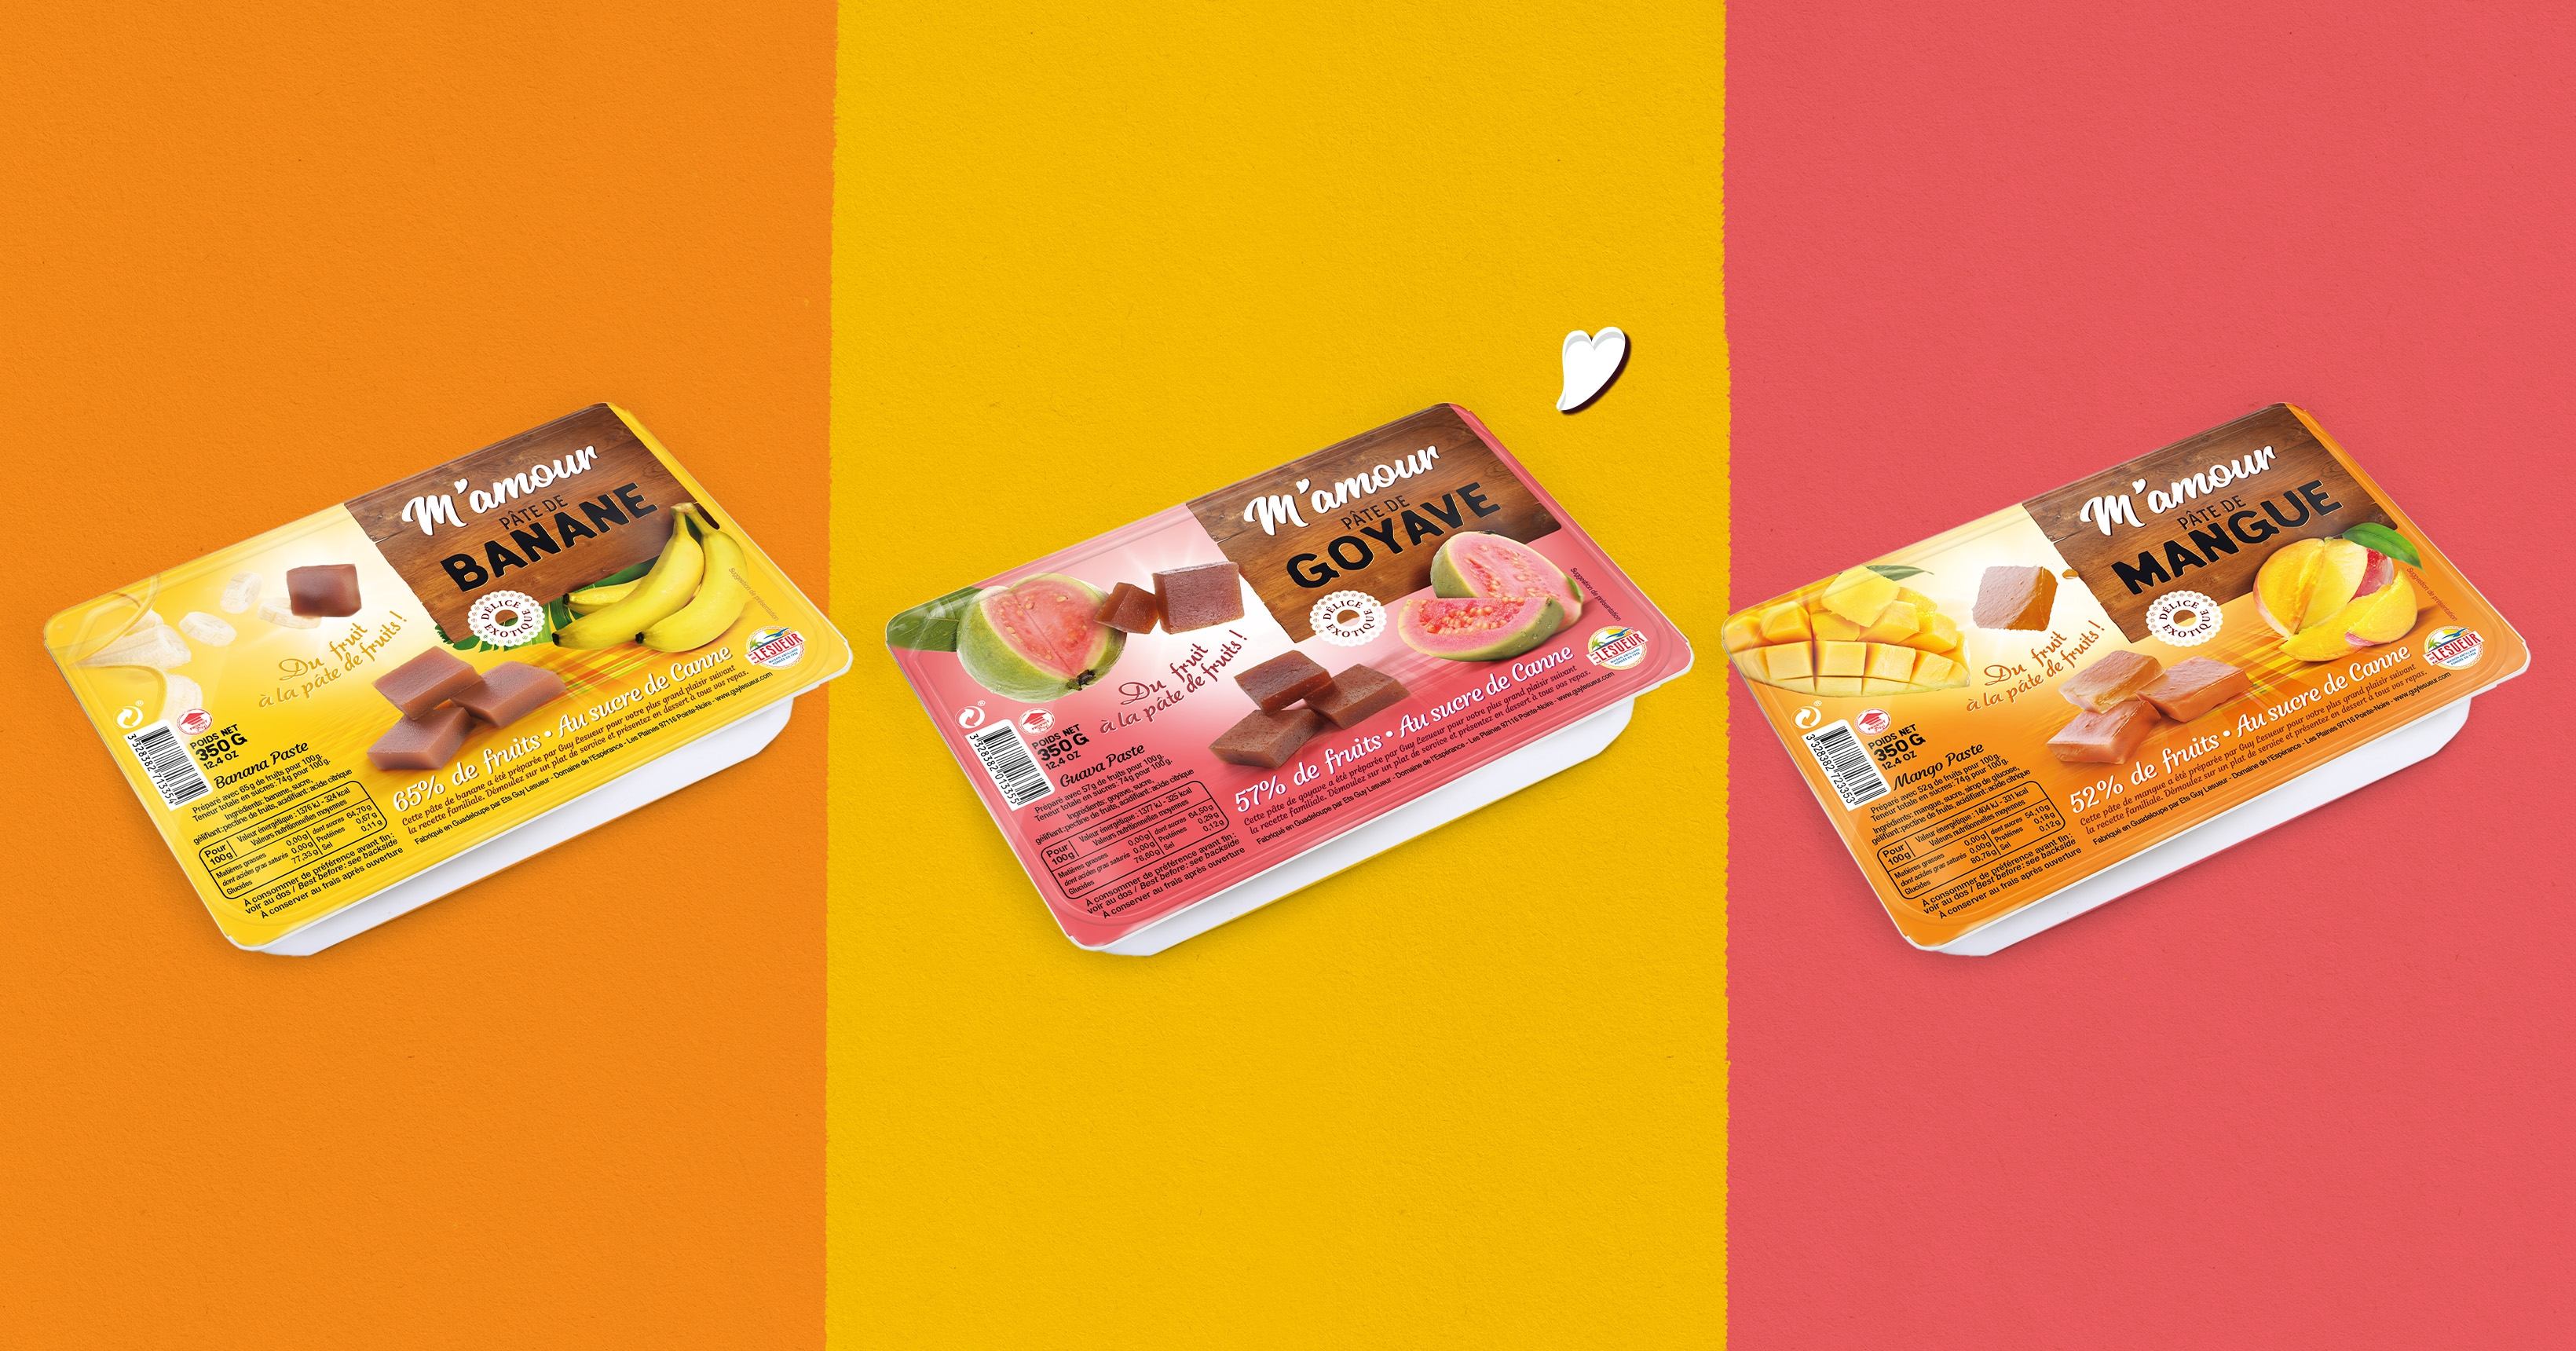 Gamme de packagings M’Amour Guy Lesueur, pâte de fruits, banane, goyave, mangue, sur fond coloré